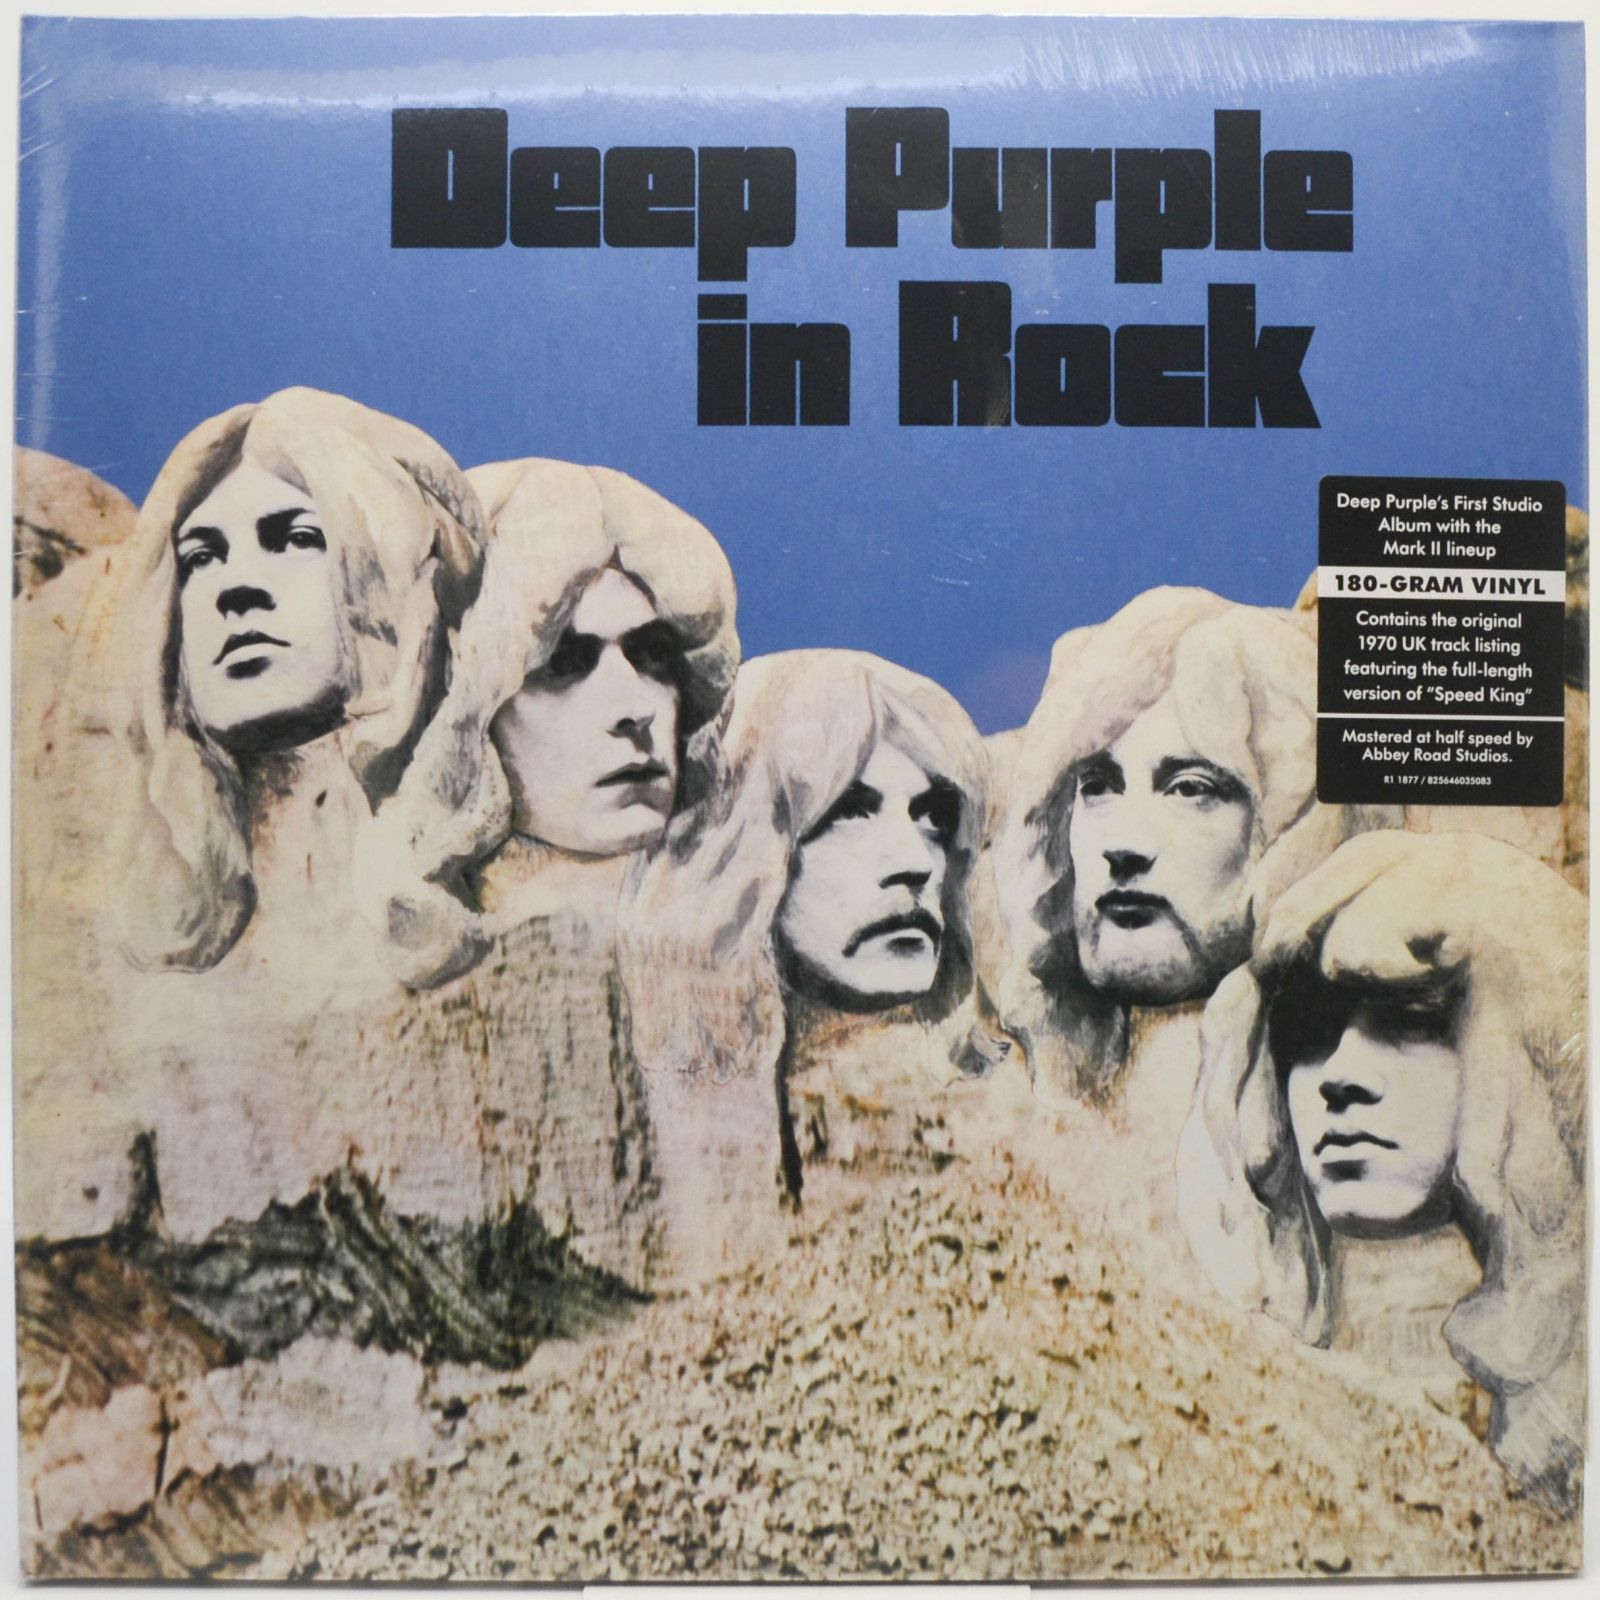 Deep Purple — Deep Purple In Rock, 1970